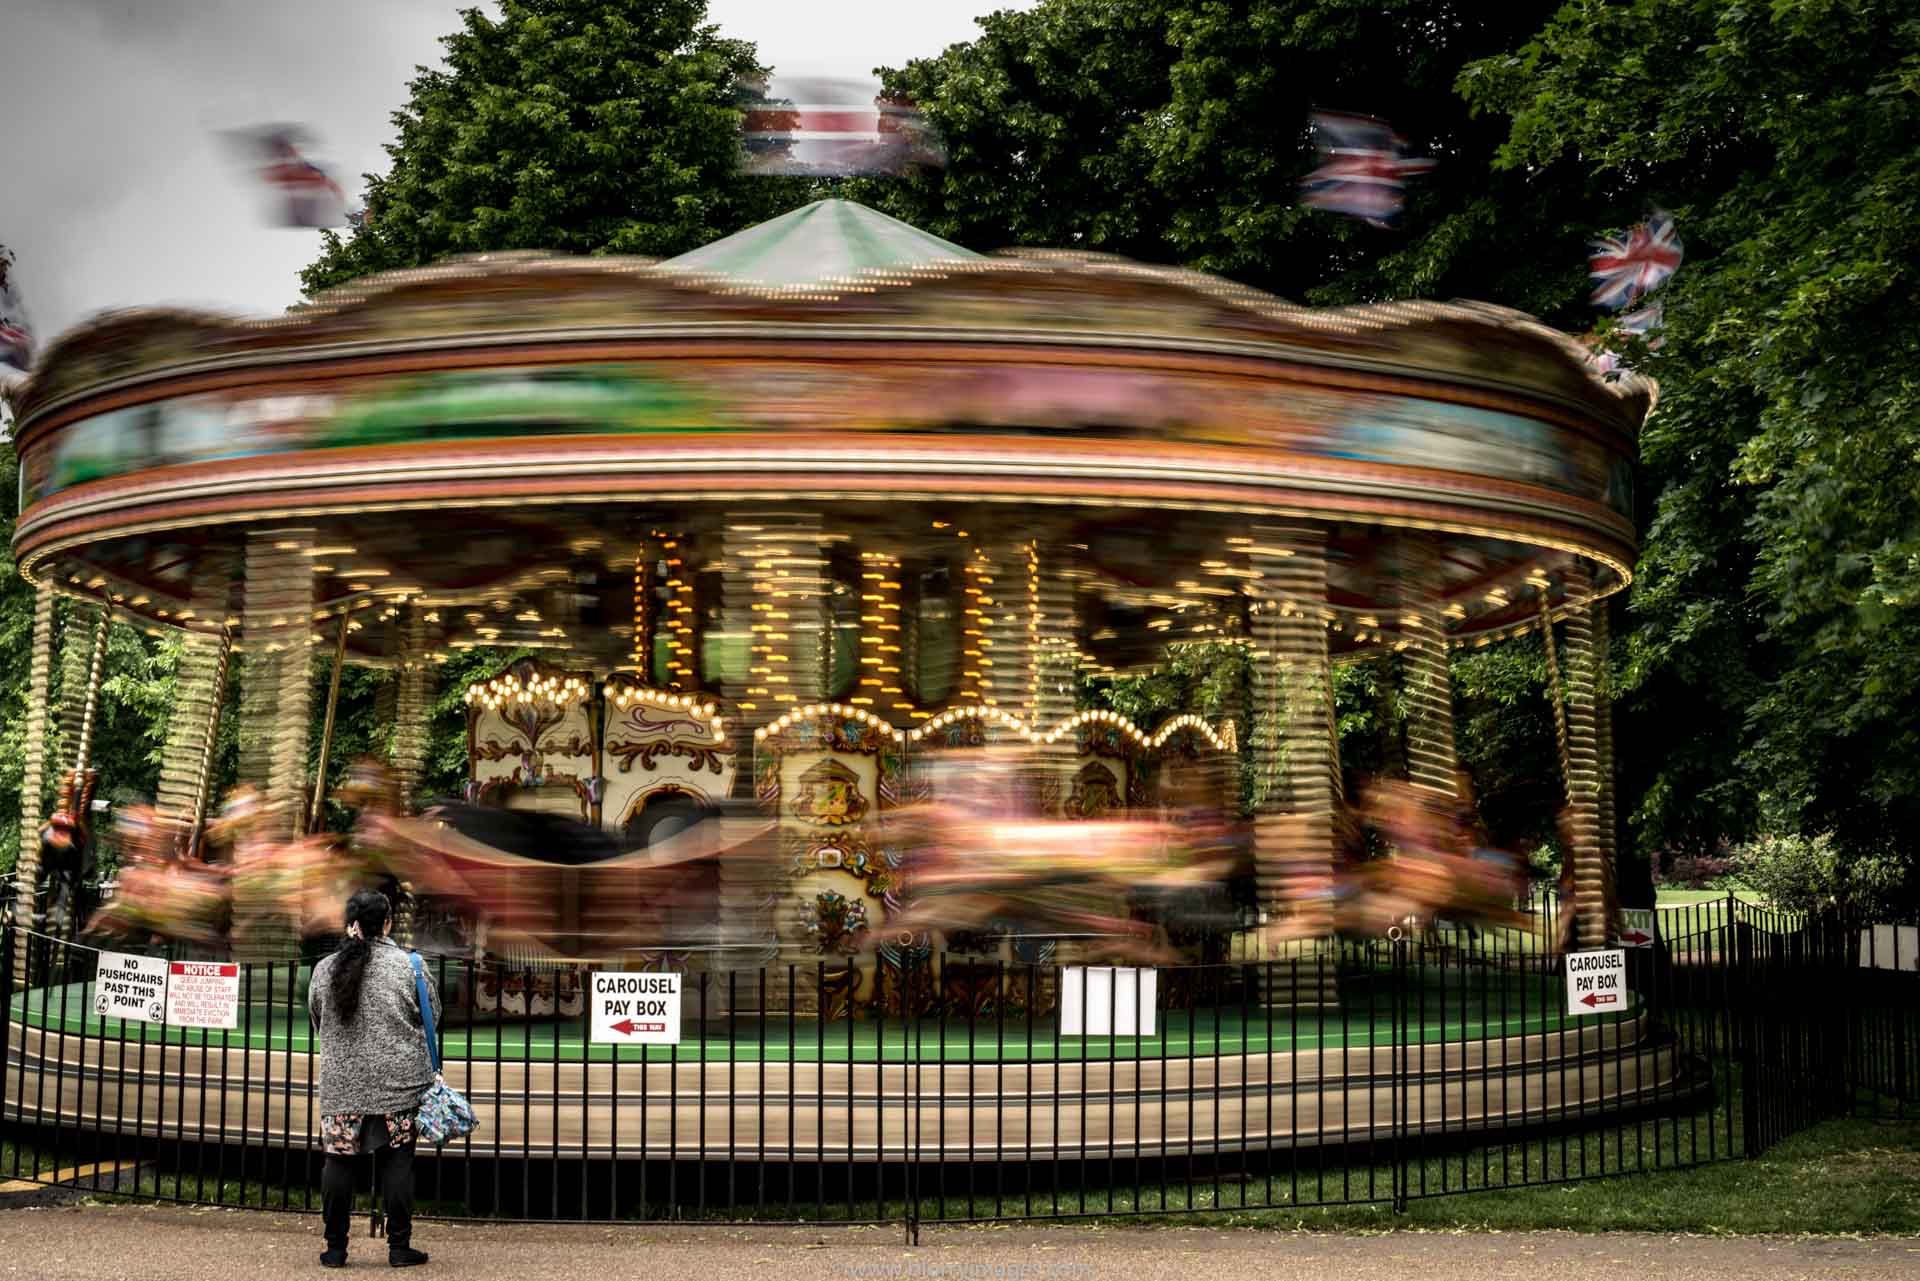 fun fair, funfair, funfair games, funfair ideas, funfair London, fun fair carousel, carrousel, blurred pictures